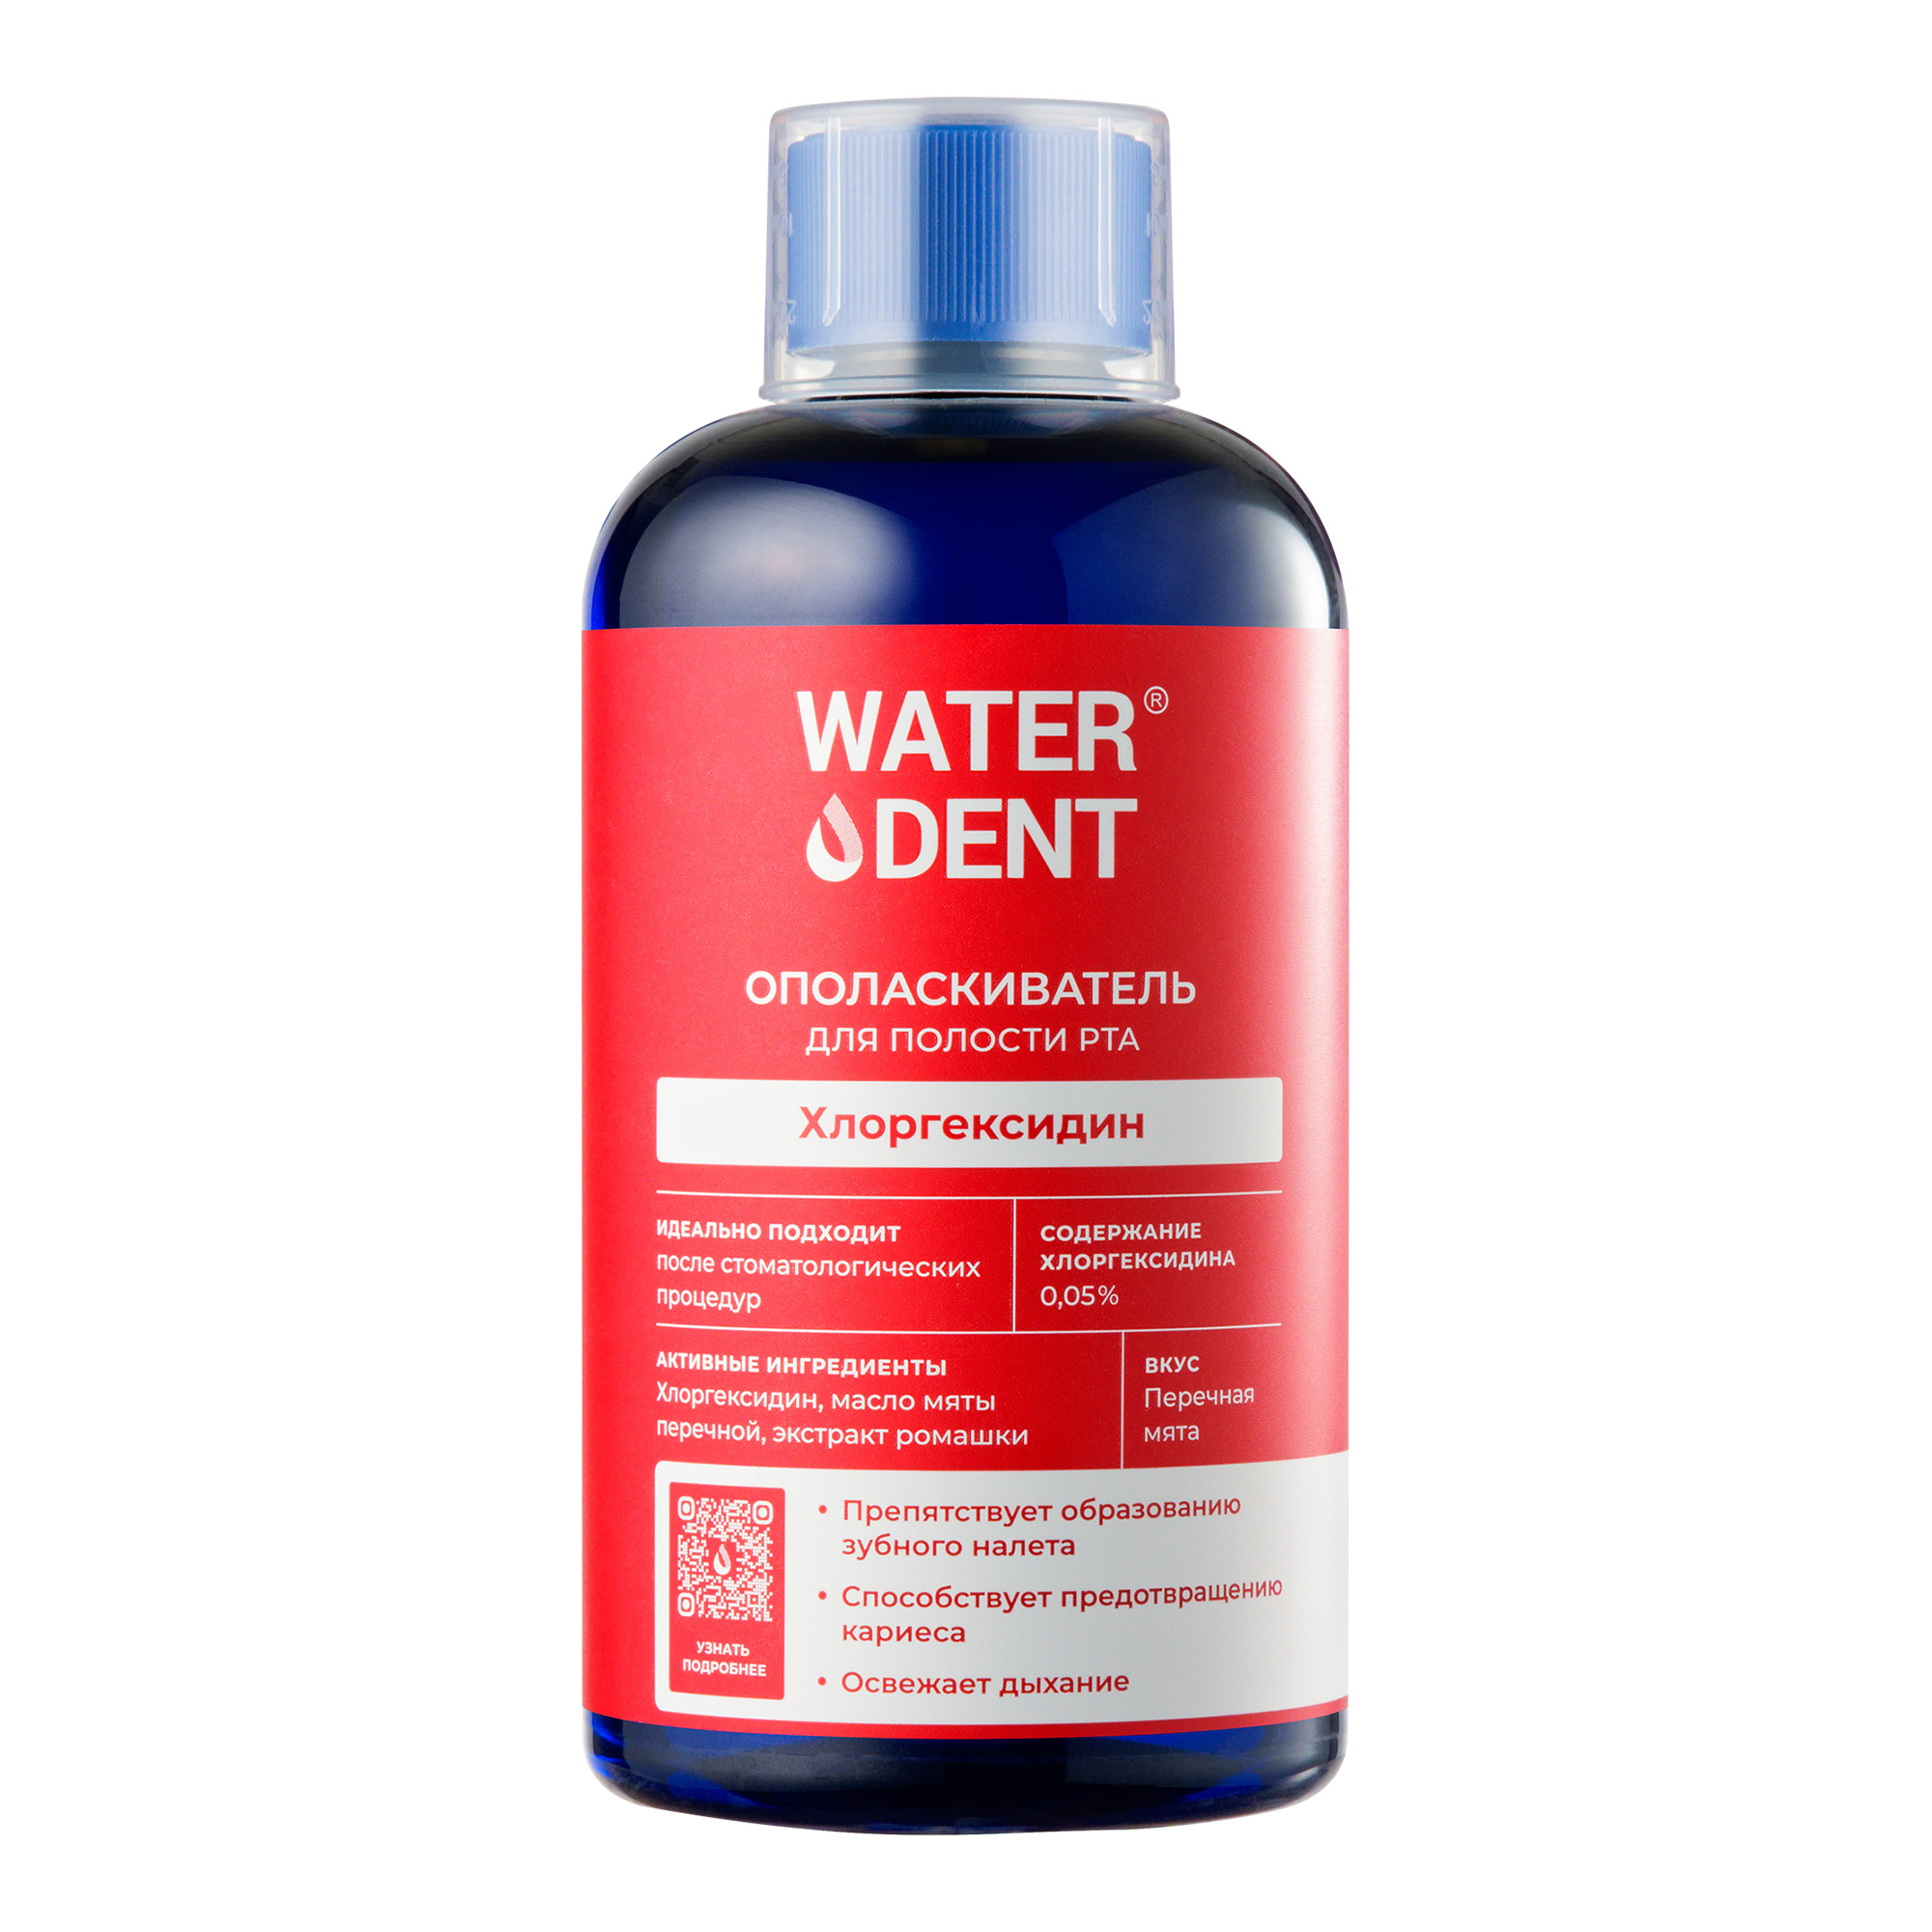 Waterdent, ополаскиватель для полости рта Хлоргексидин со вкусом мяты, 500 мл хлоргексидин виалайн спрей для полости рта 45мл